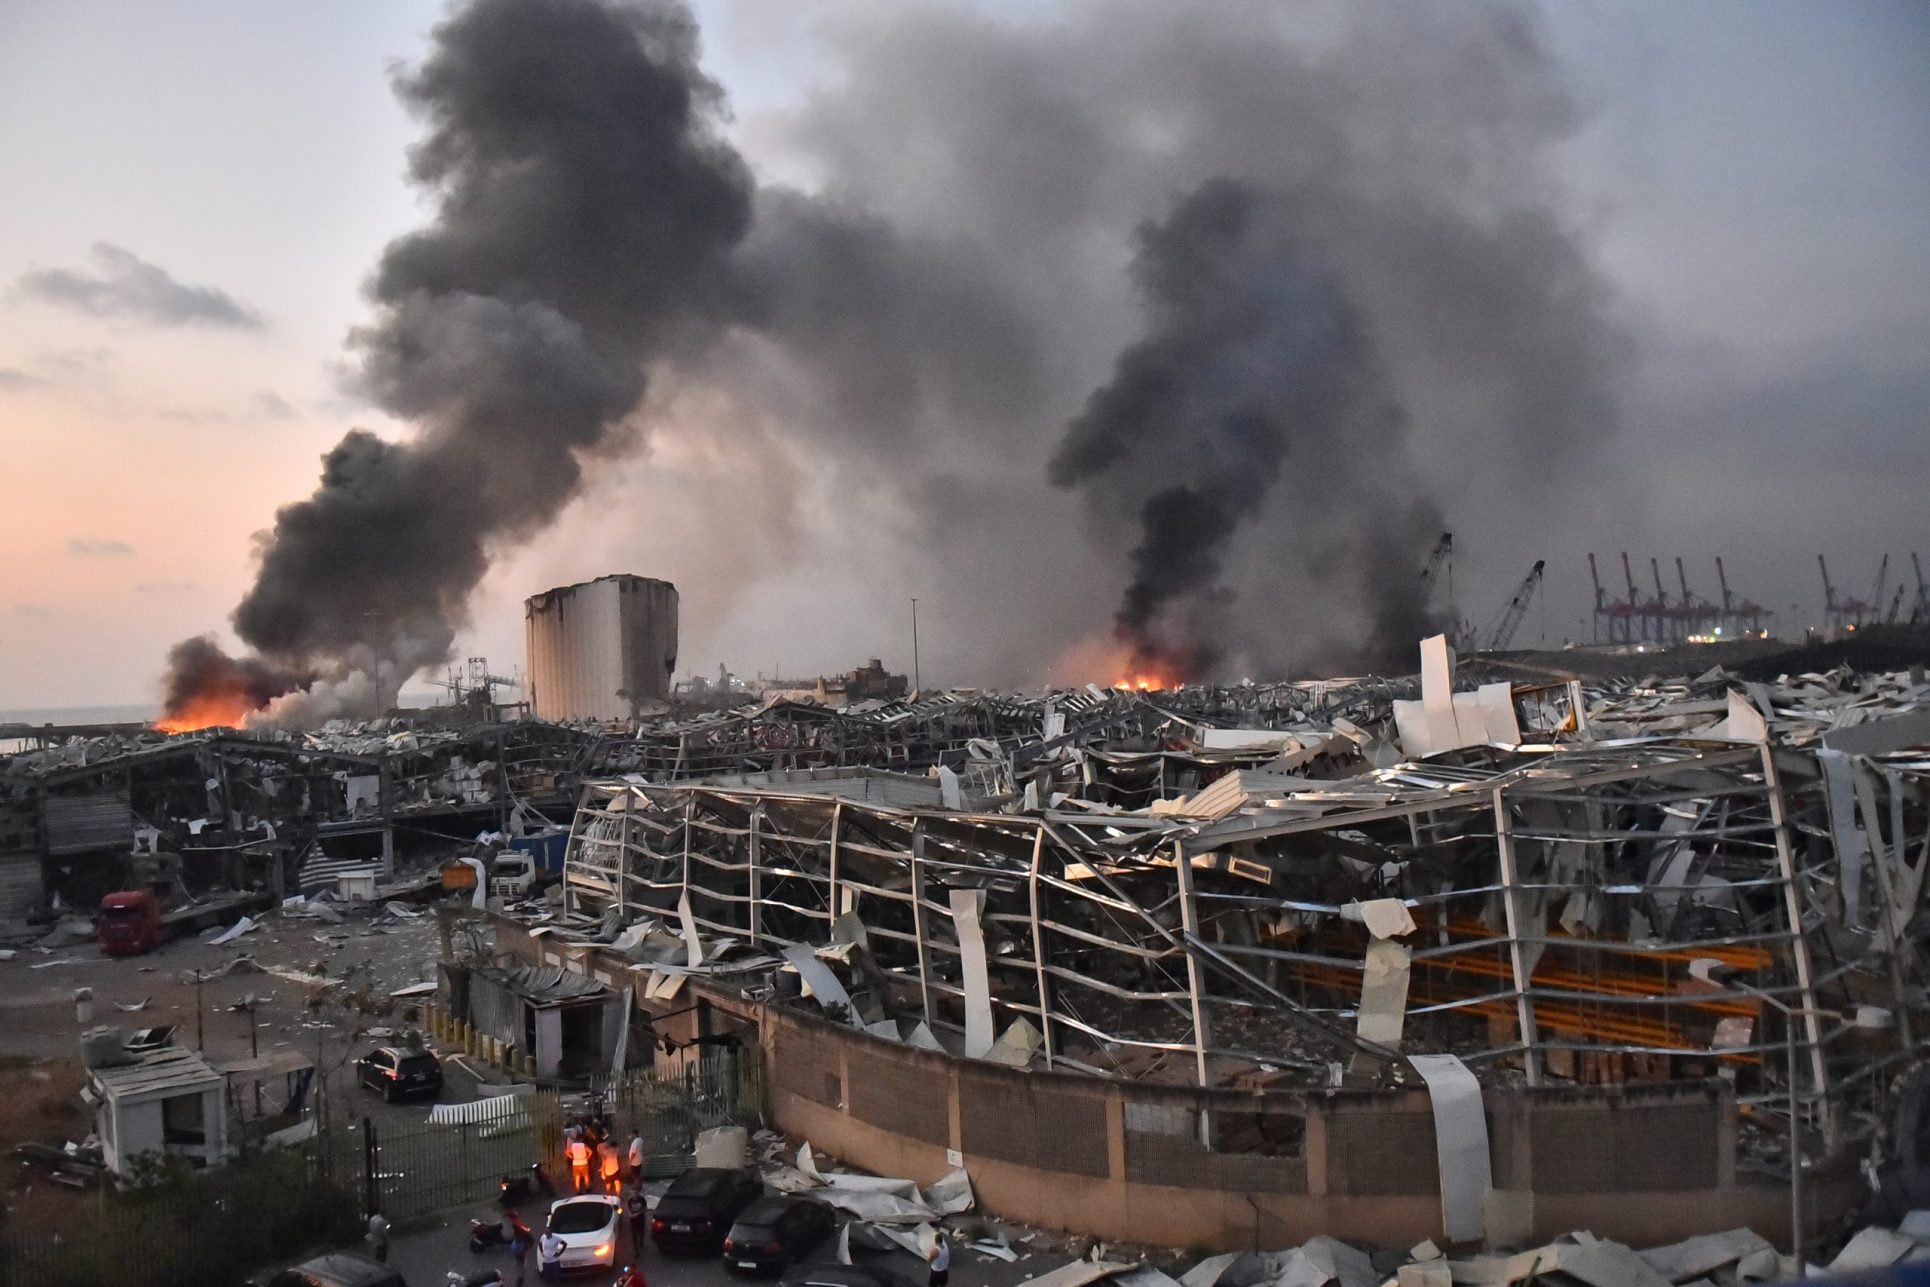 Tica en Beirut: “Esto es zona de guerra… está todo destruido” tras devastadoras explosiones